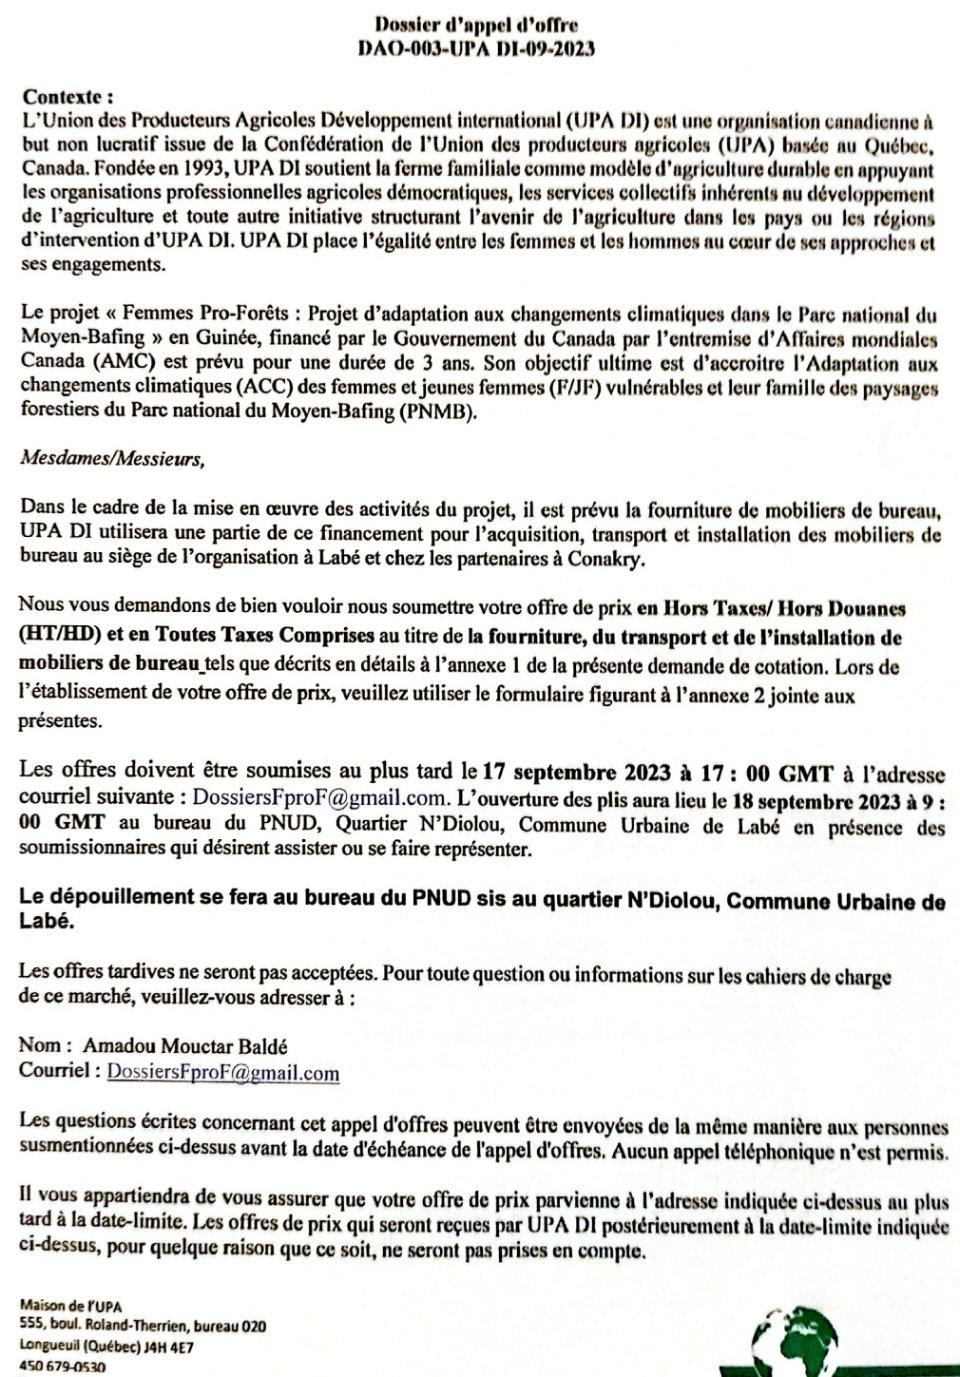 Acquisition, Transport Et Installation De Mobiliers De Bureau Au Compte De UPA DI | Page 2